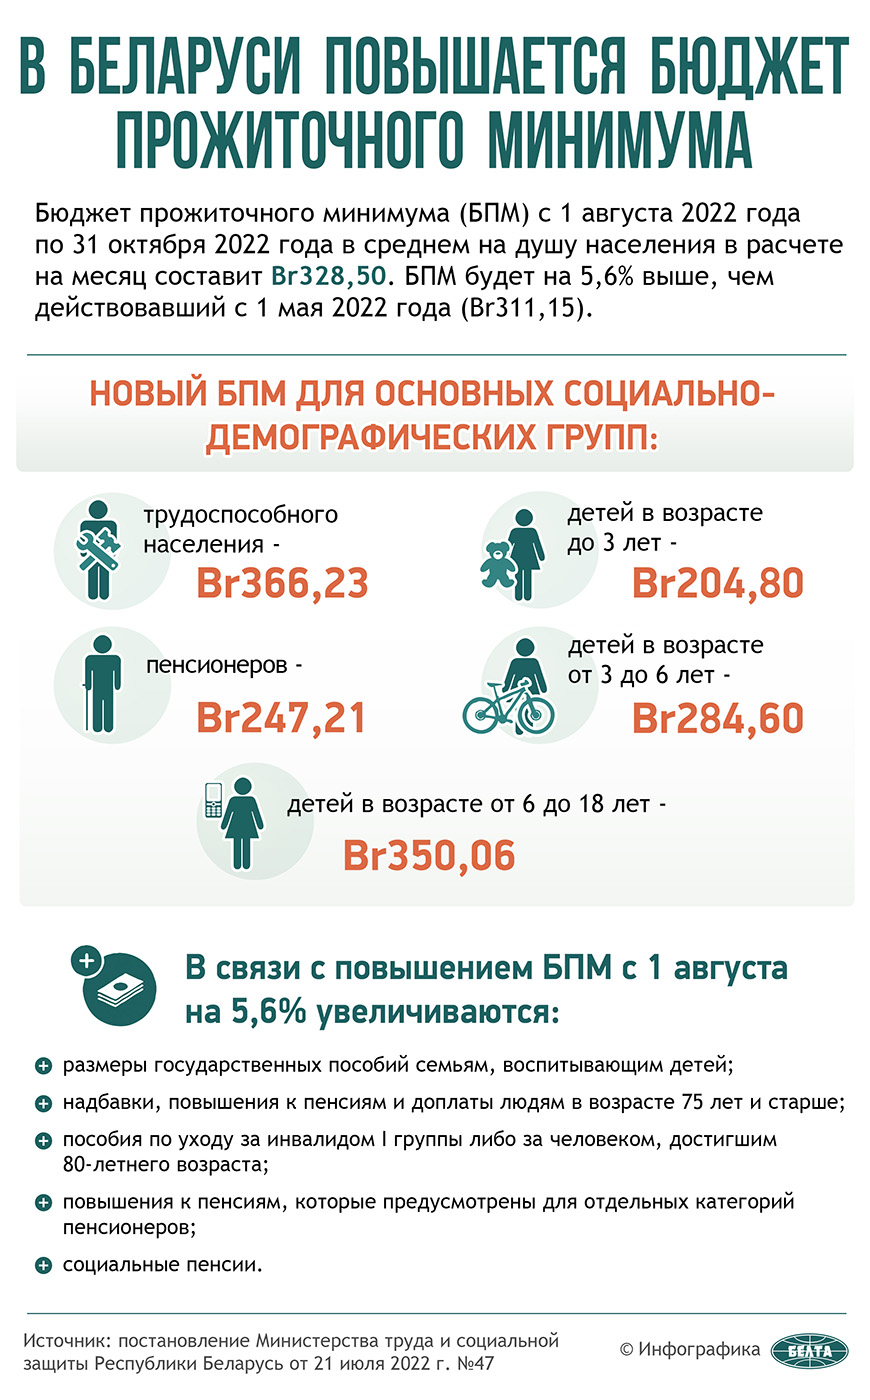 В Беларуси с 1 августа повышается бюджет прожиточного минимума